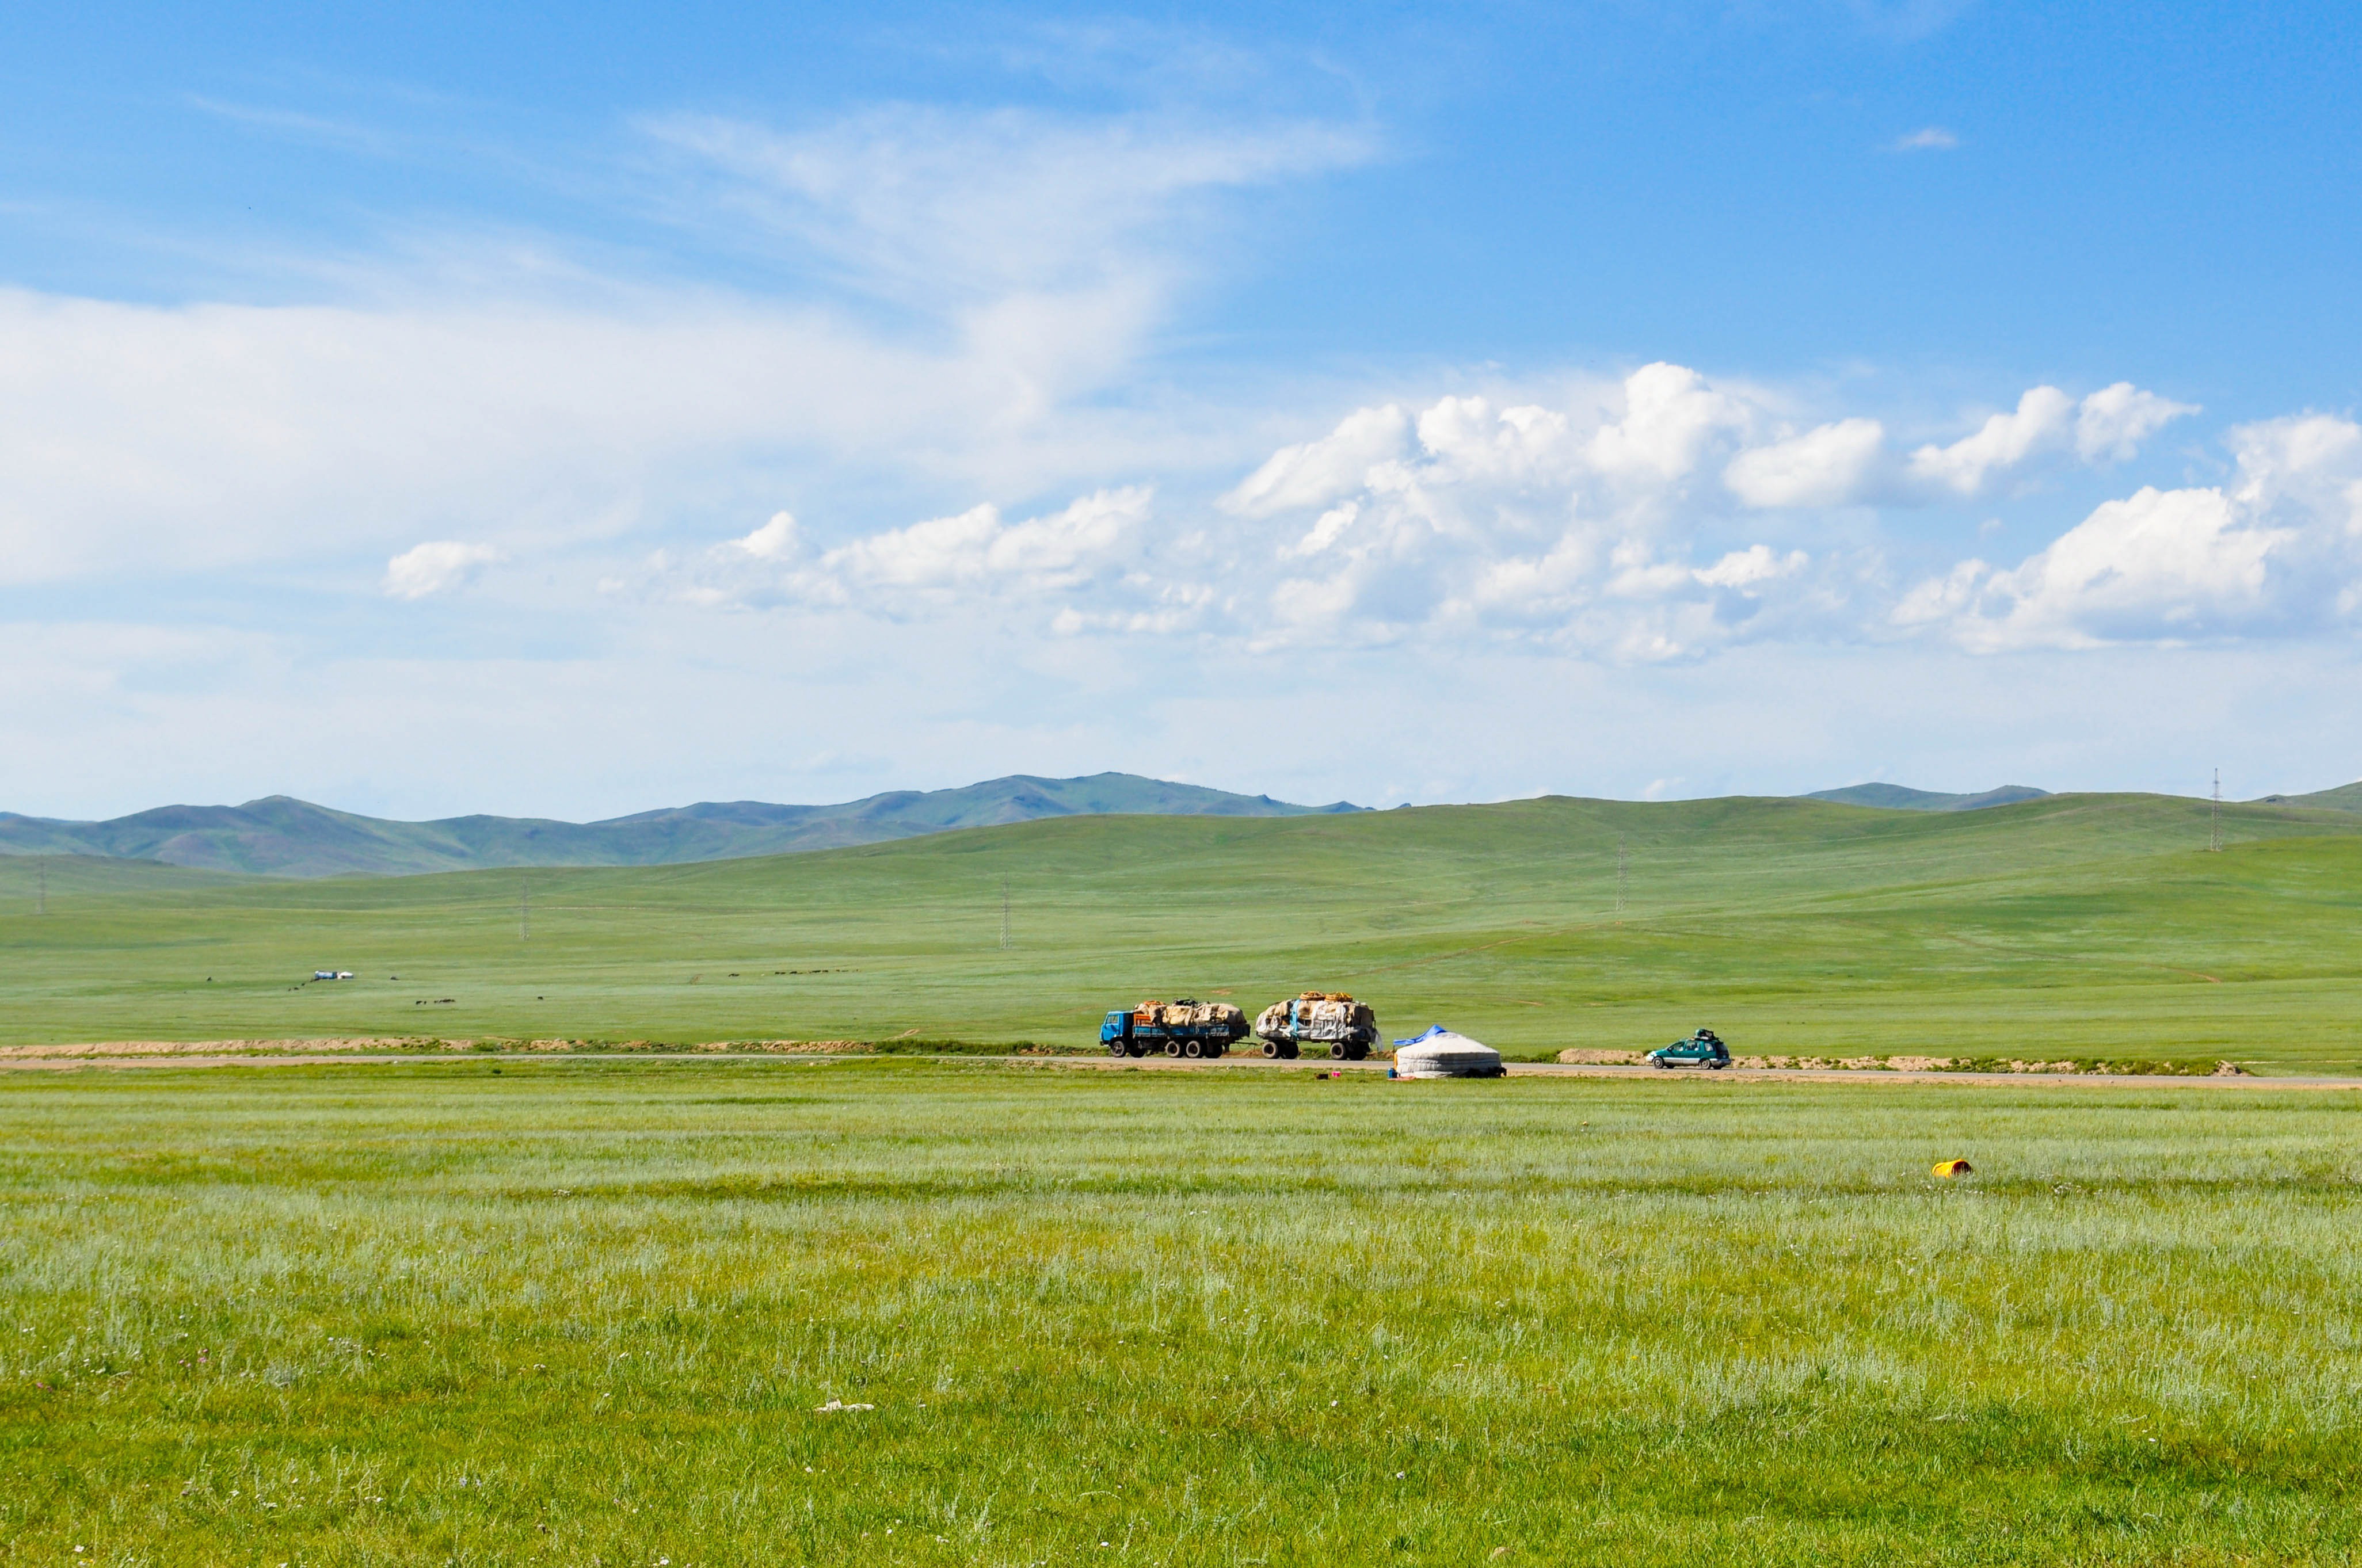 蒙古背景图片大全图片